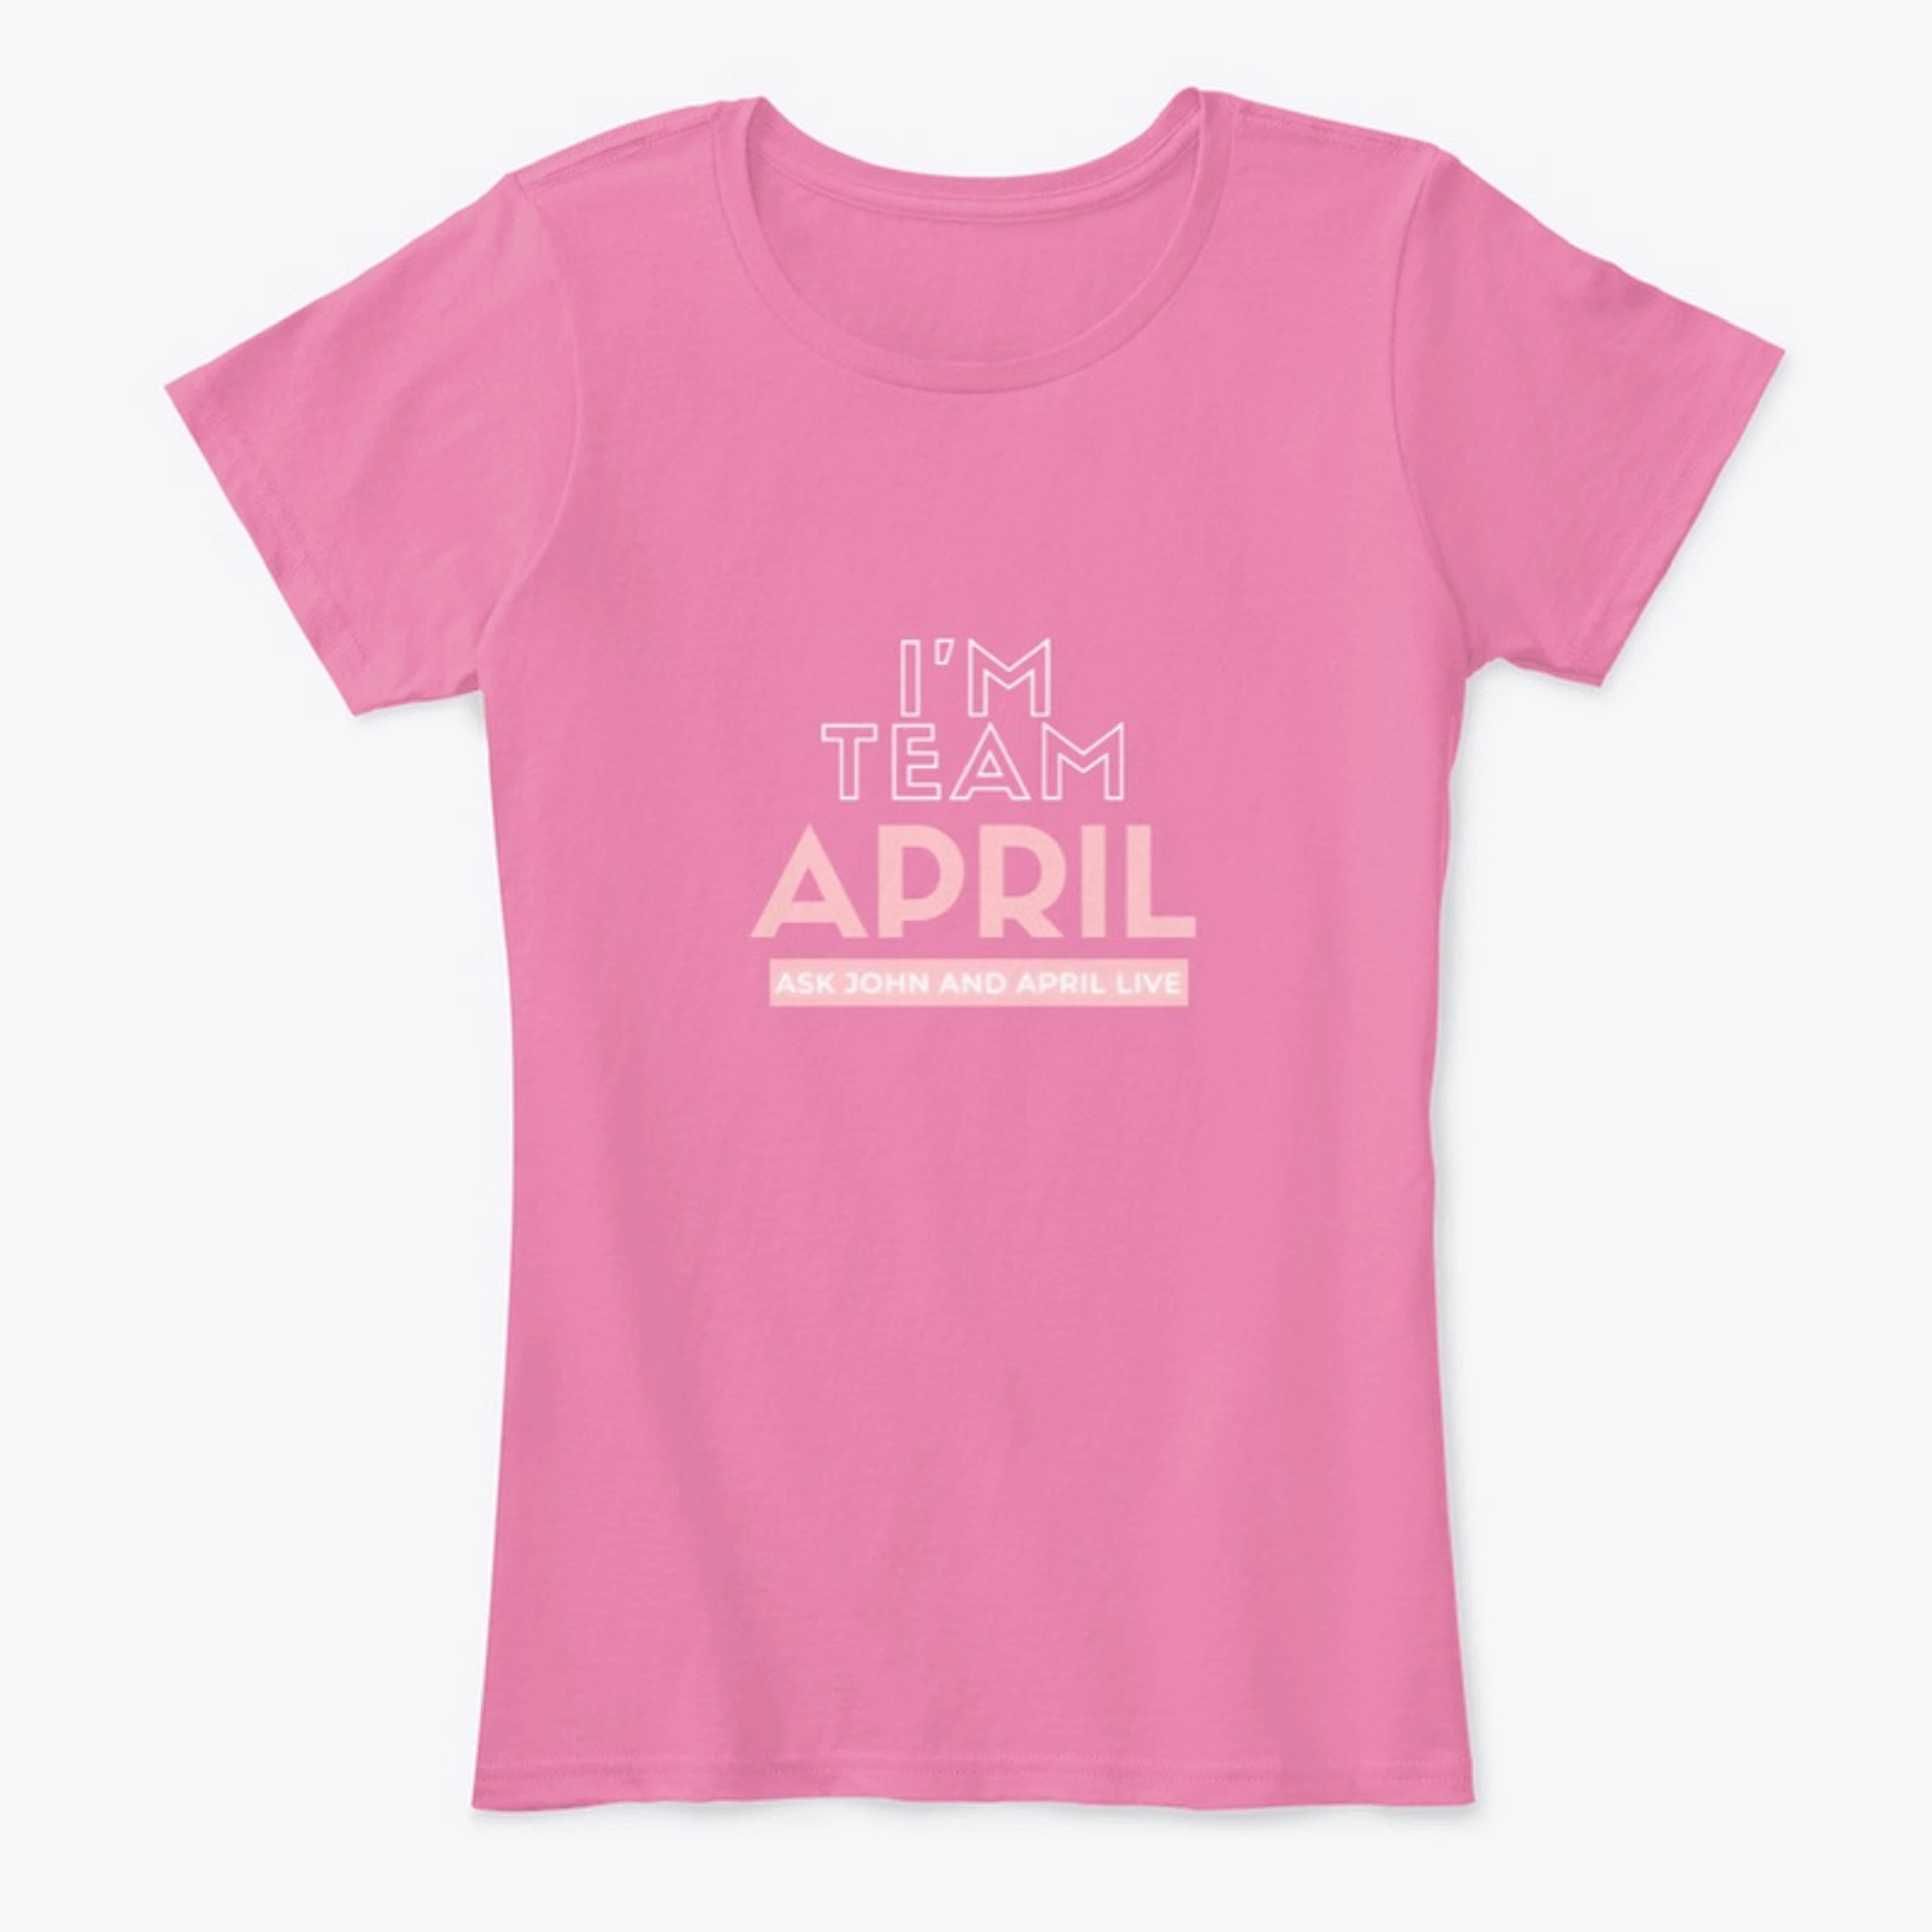 I'm Team April Ladies